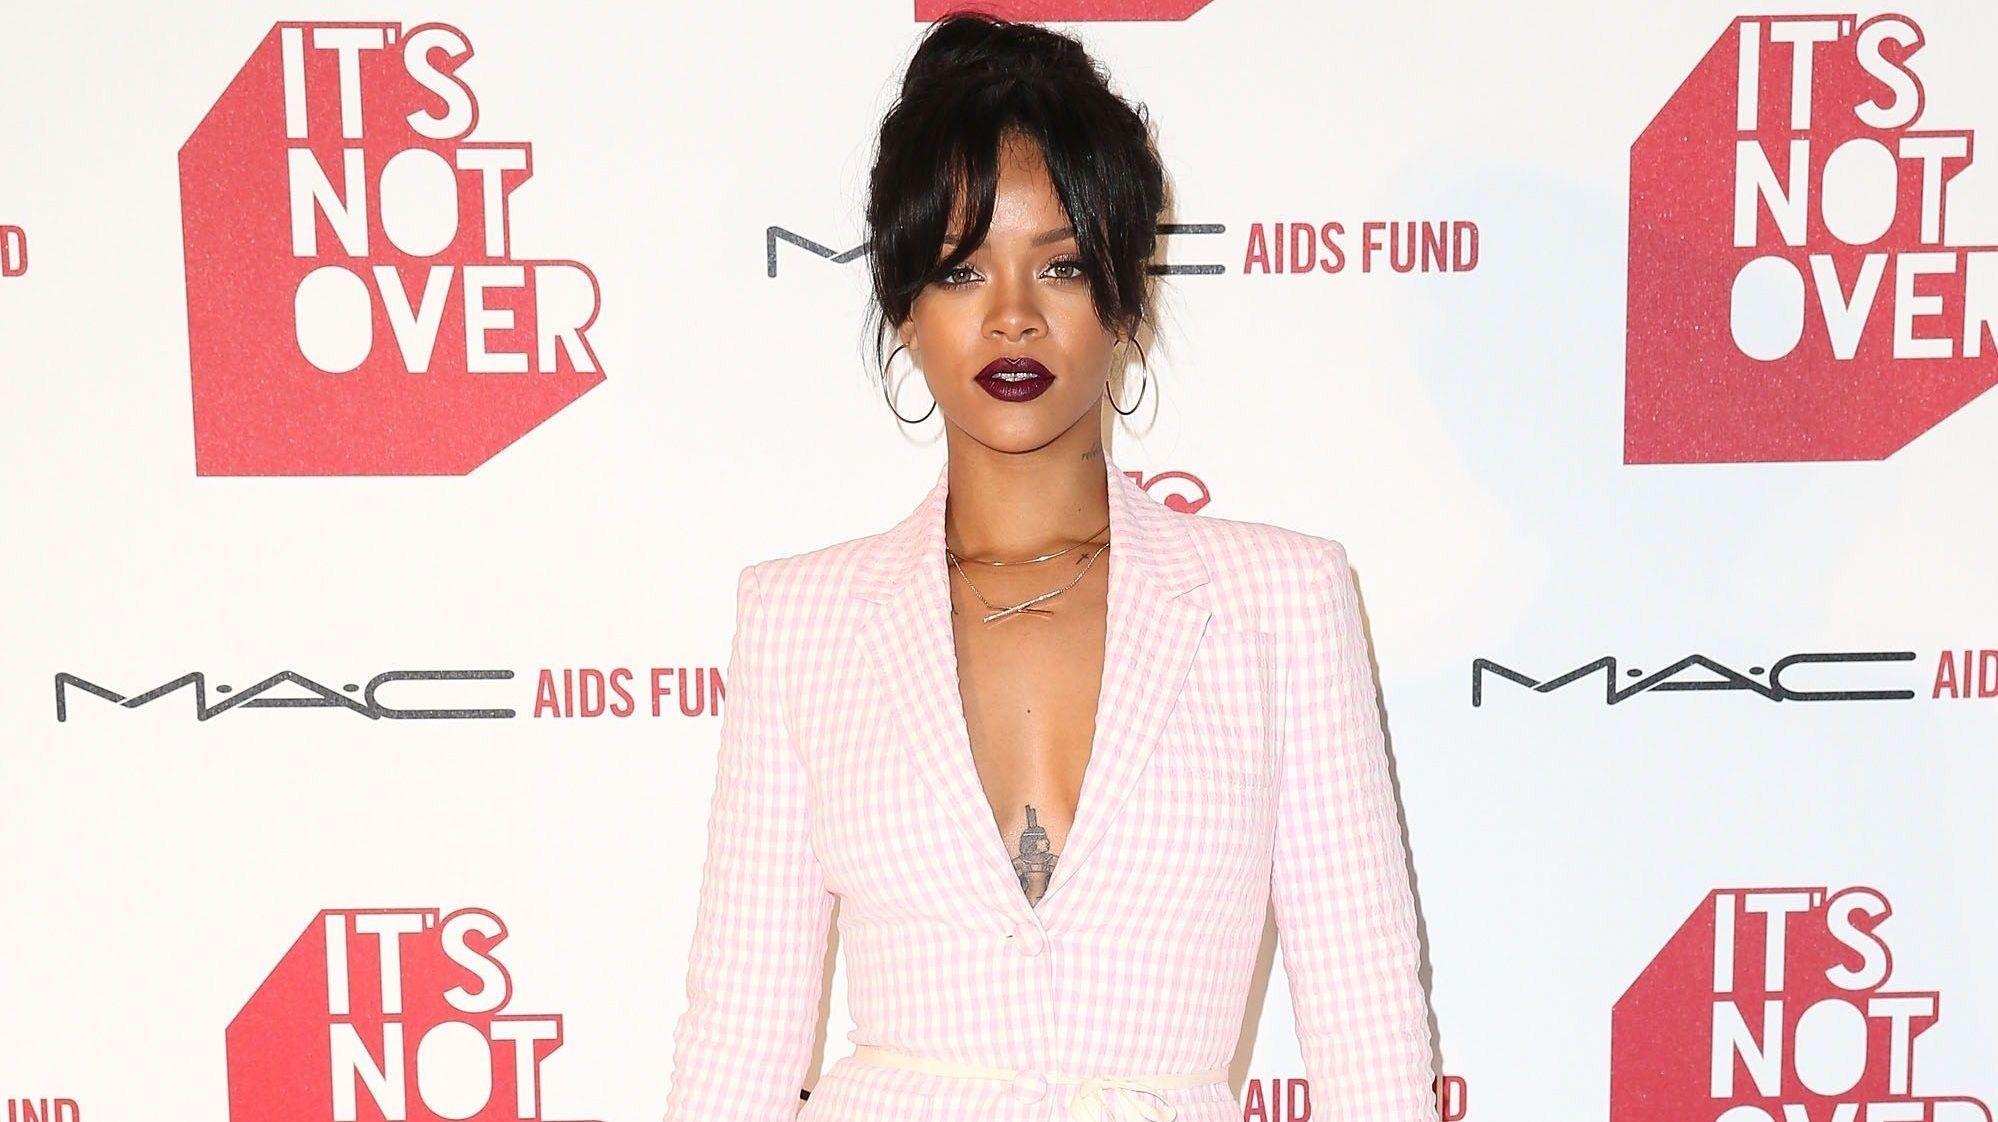 SKJORTELØS: Rihanna stiller stadig opp på den røde løperen i vågale antrekk og i går droppet superstjernen skjorten da hun poserte for fotografene. Foto: Scanpix